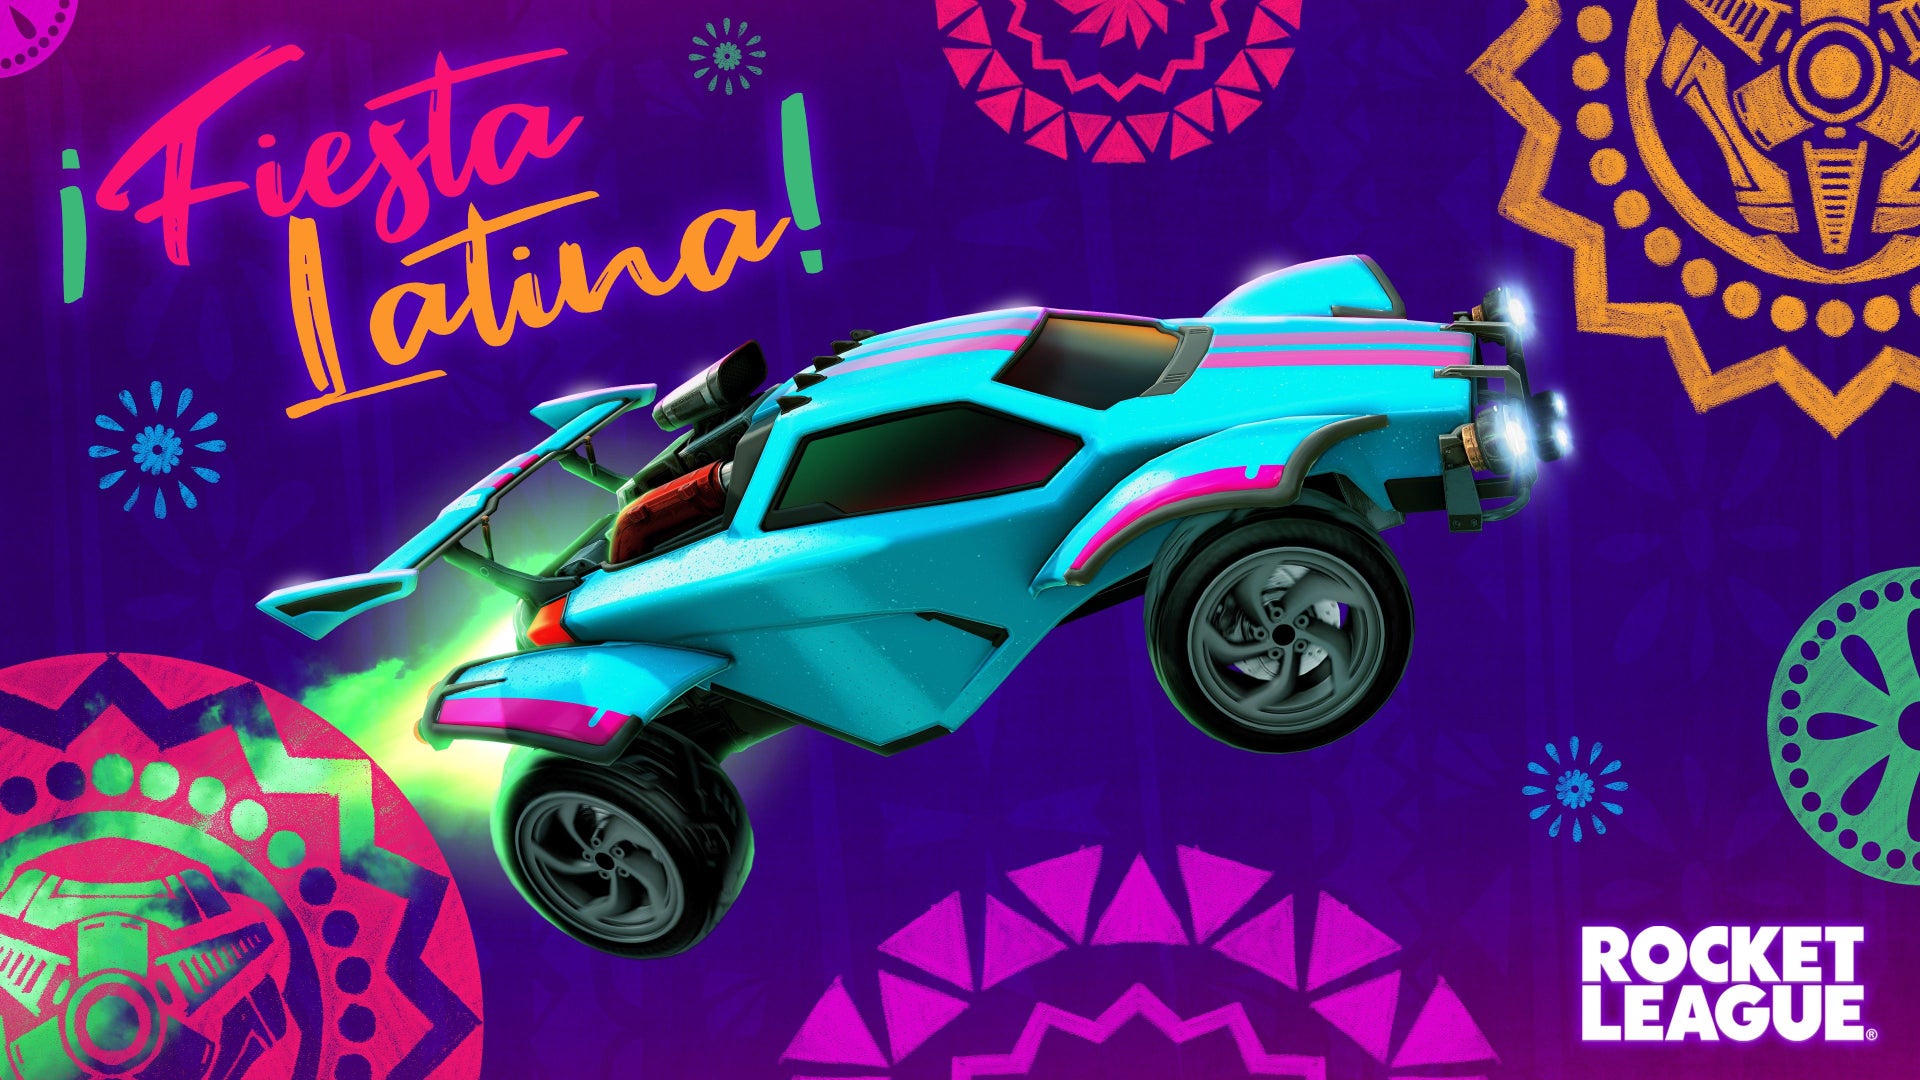 Celebre a ¡Fiesta Latina! com um pacote de músicas gratuito Image